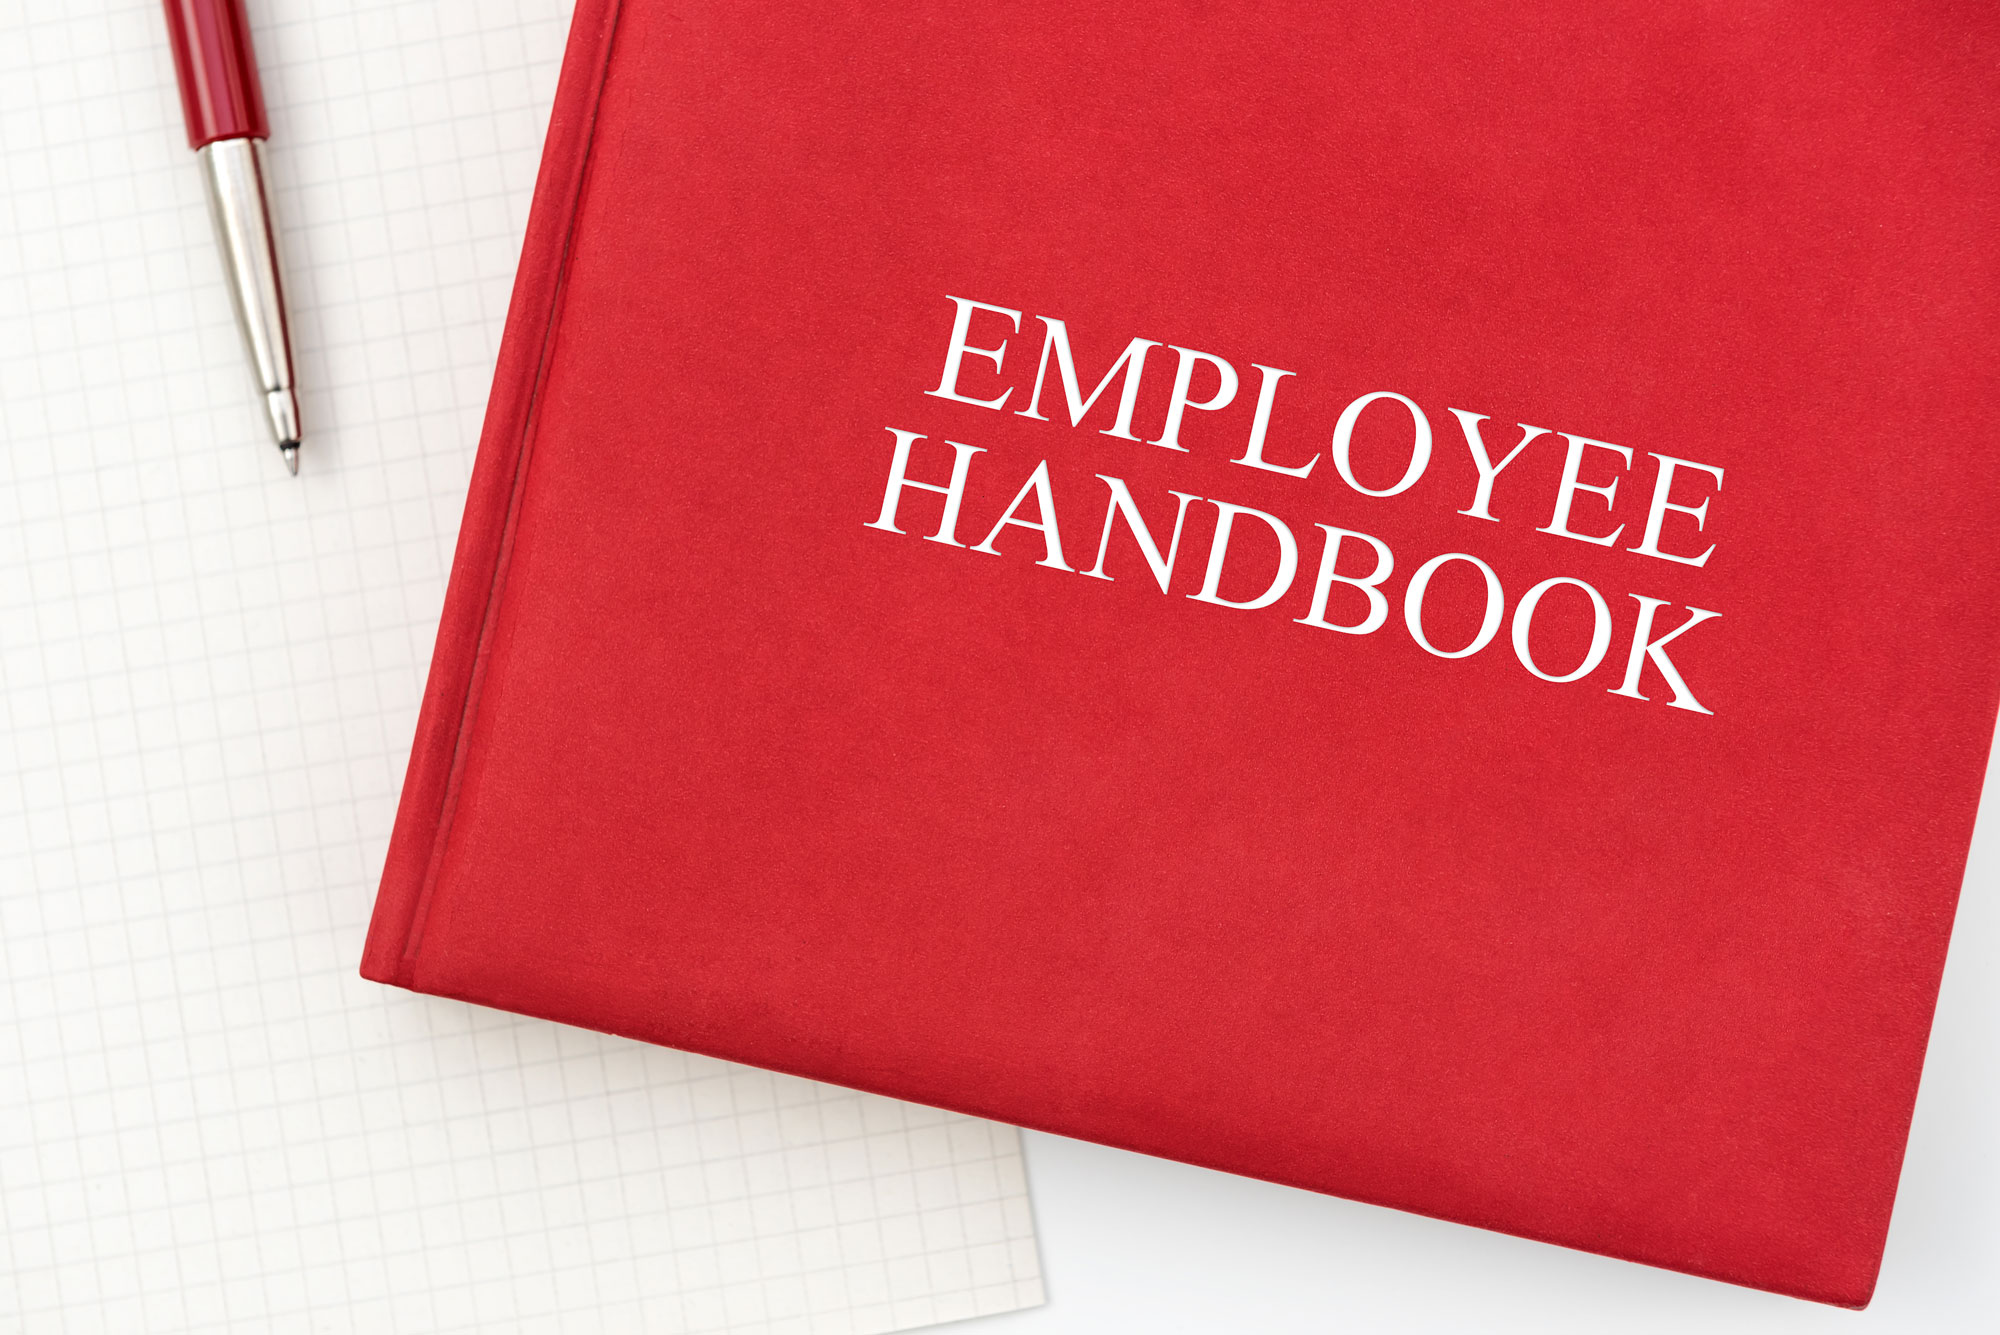 employee handbook checklist